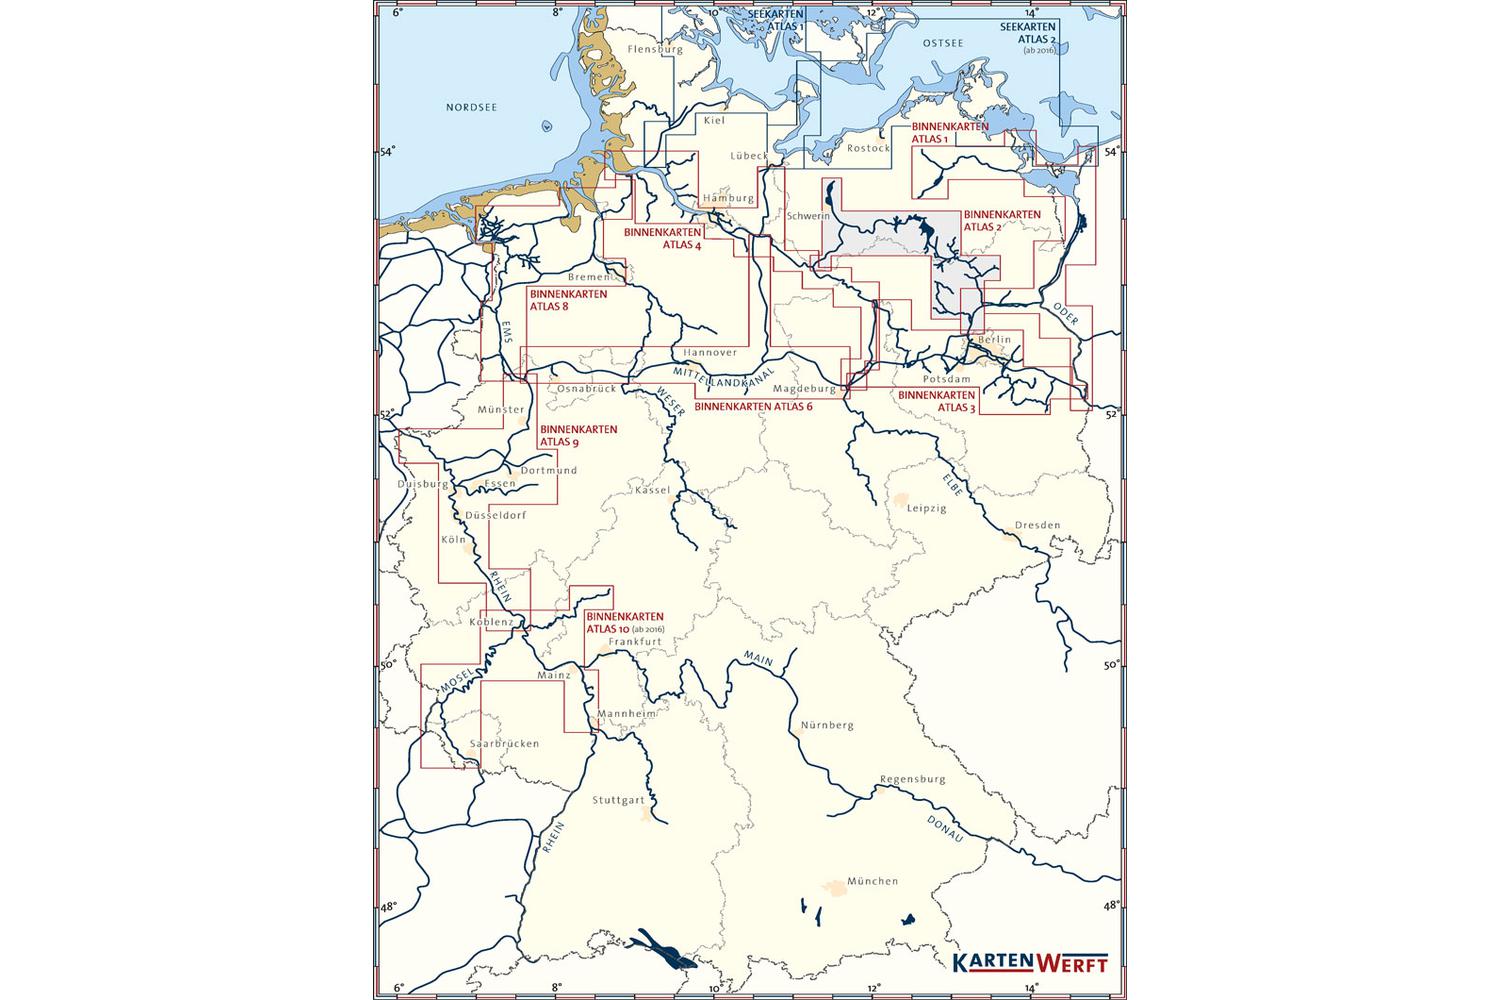 BinnenKarten Atlas 10 Mosel und Mittelrhein